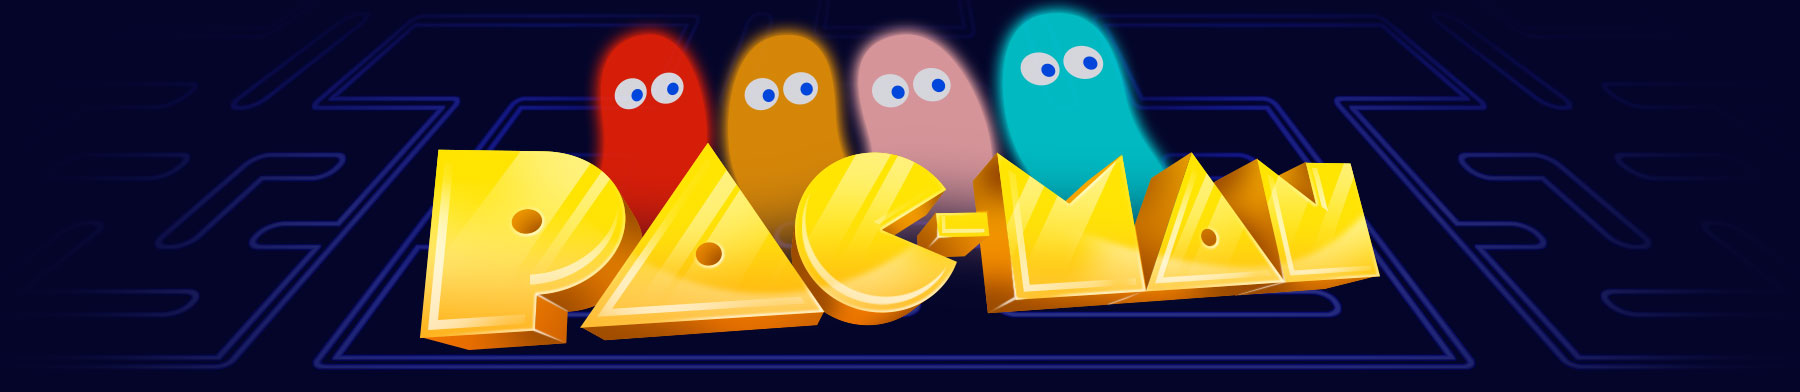 Pac-Man Logo